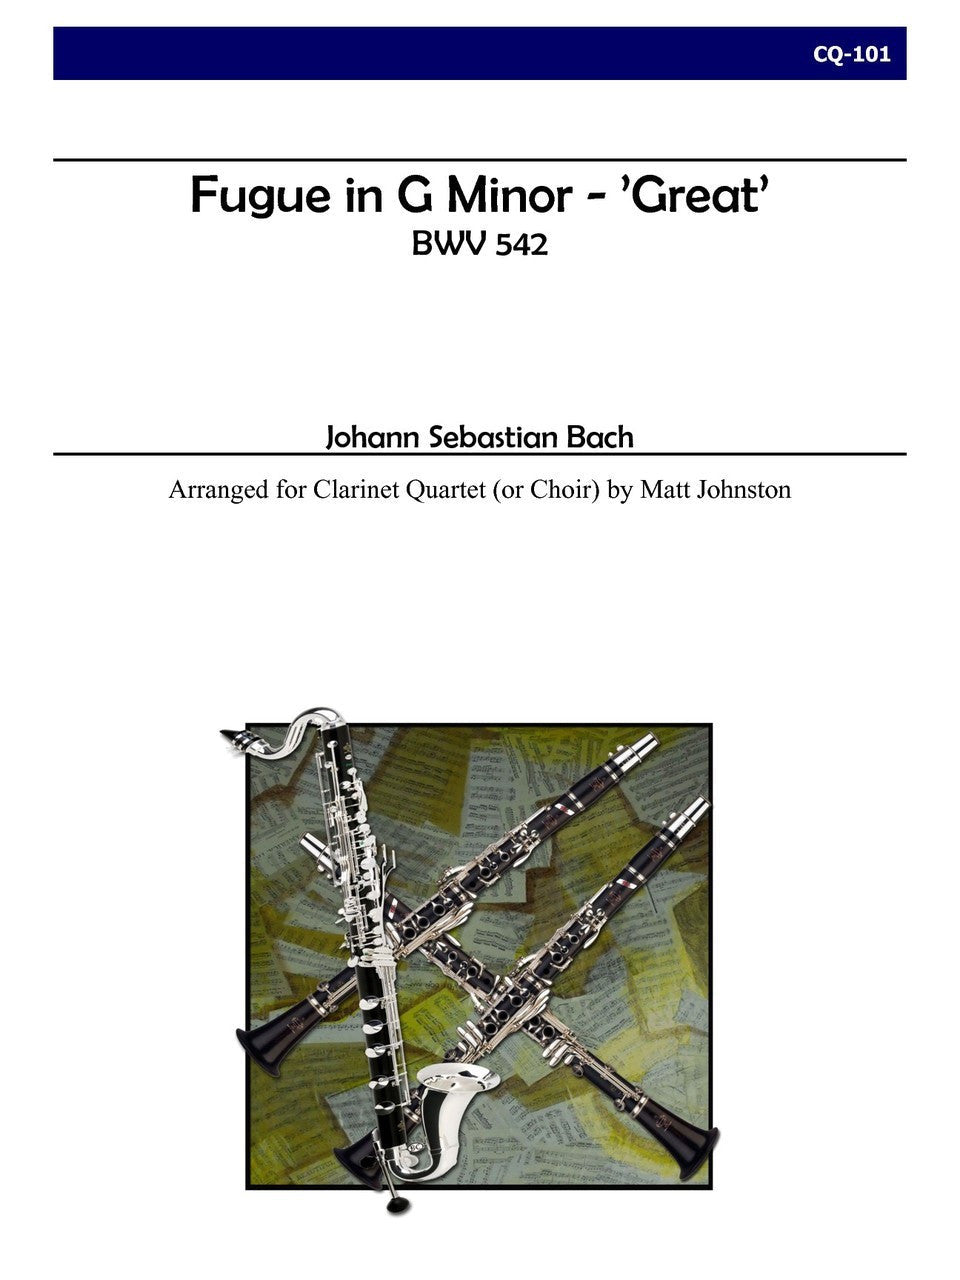 Bach (arr. Matt Johnston) - Fugue in G minor - 'Great' for Clarinet Quartet